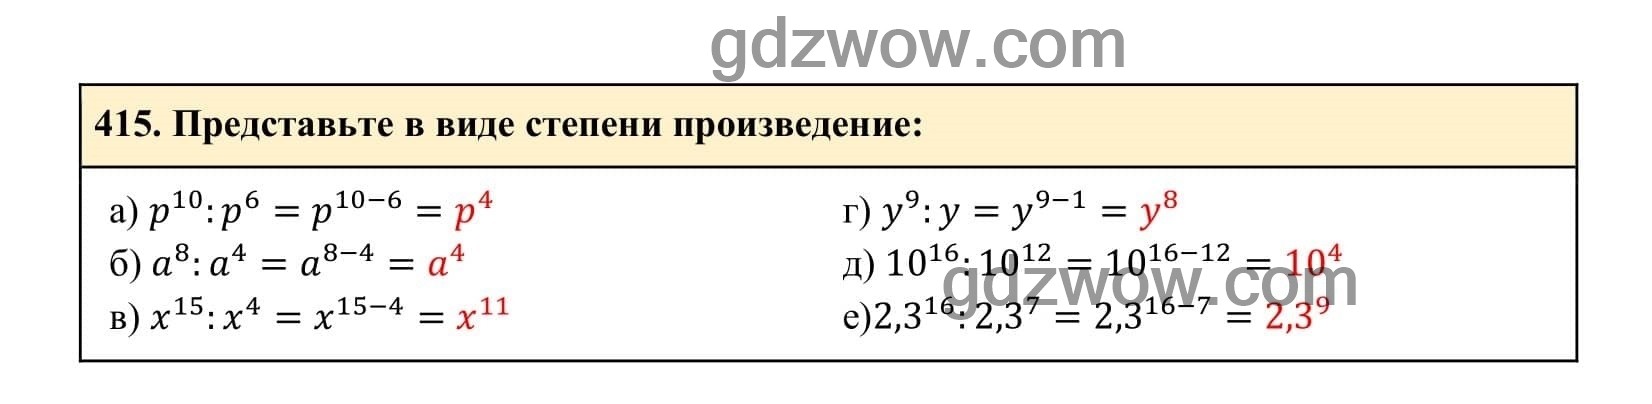 Упражнение 415 - ГДЗ по Алгебре 7 класс Учебник Макарычев (решебник) - GDZwow